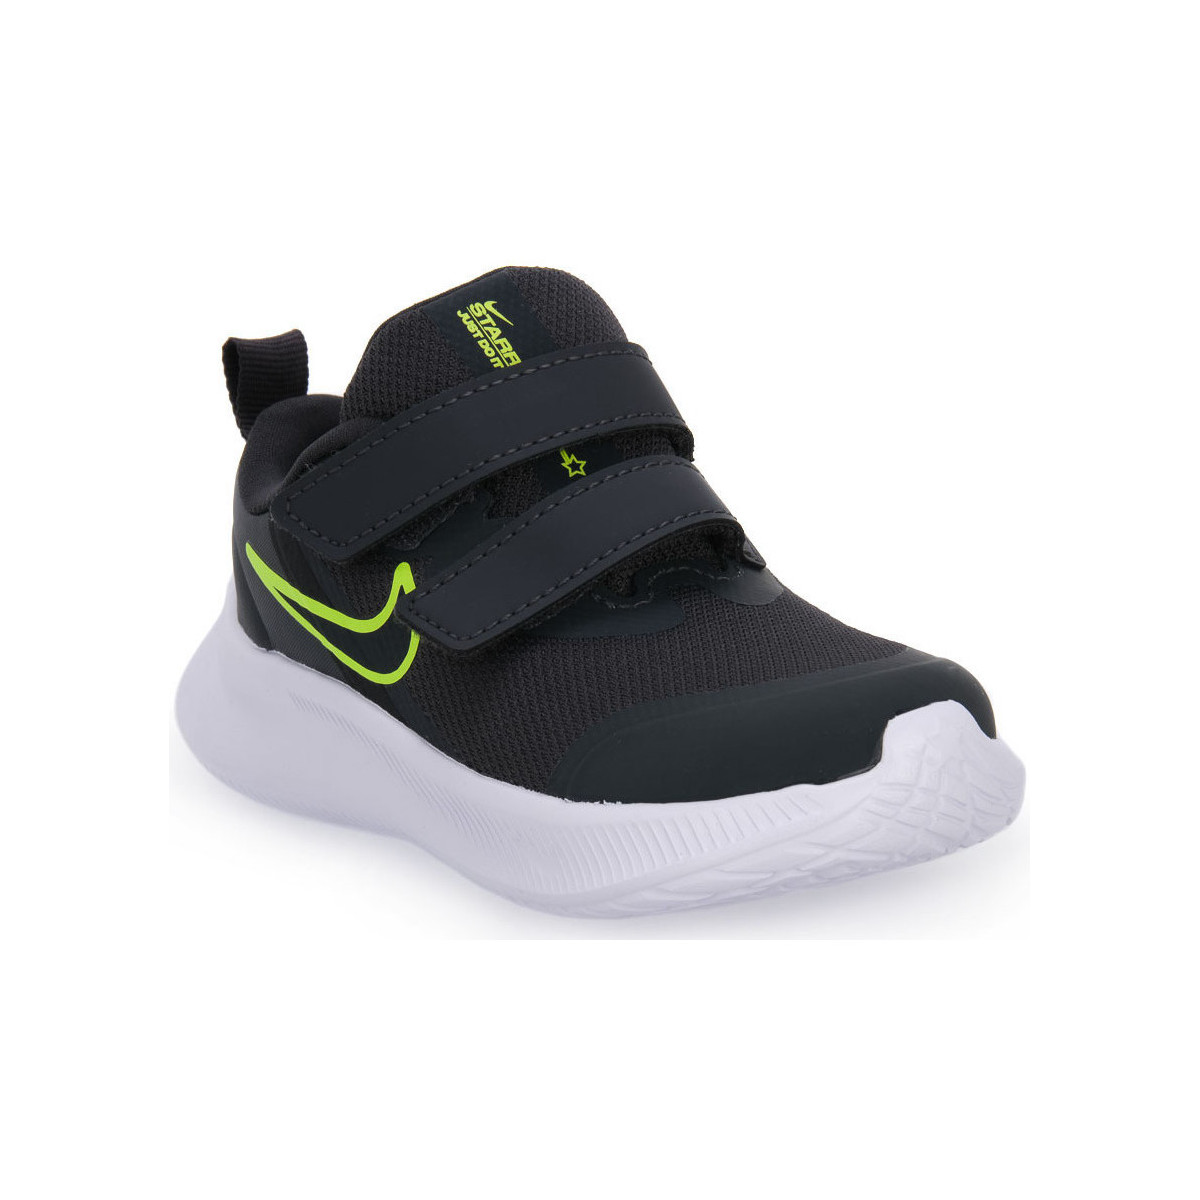 Chaussures Garçon Baskets mode Nike 004 STAR RUNNER TDV Gris